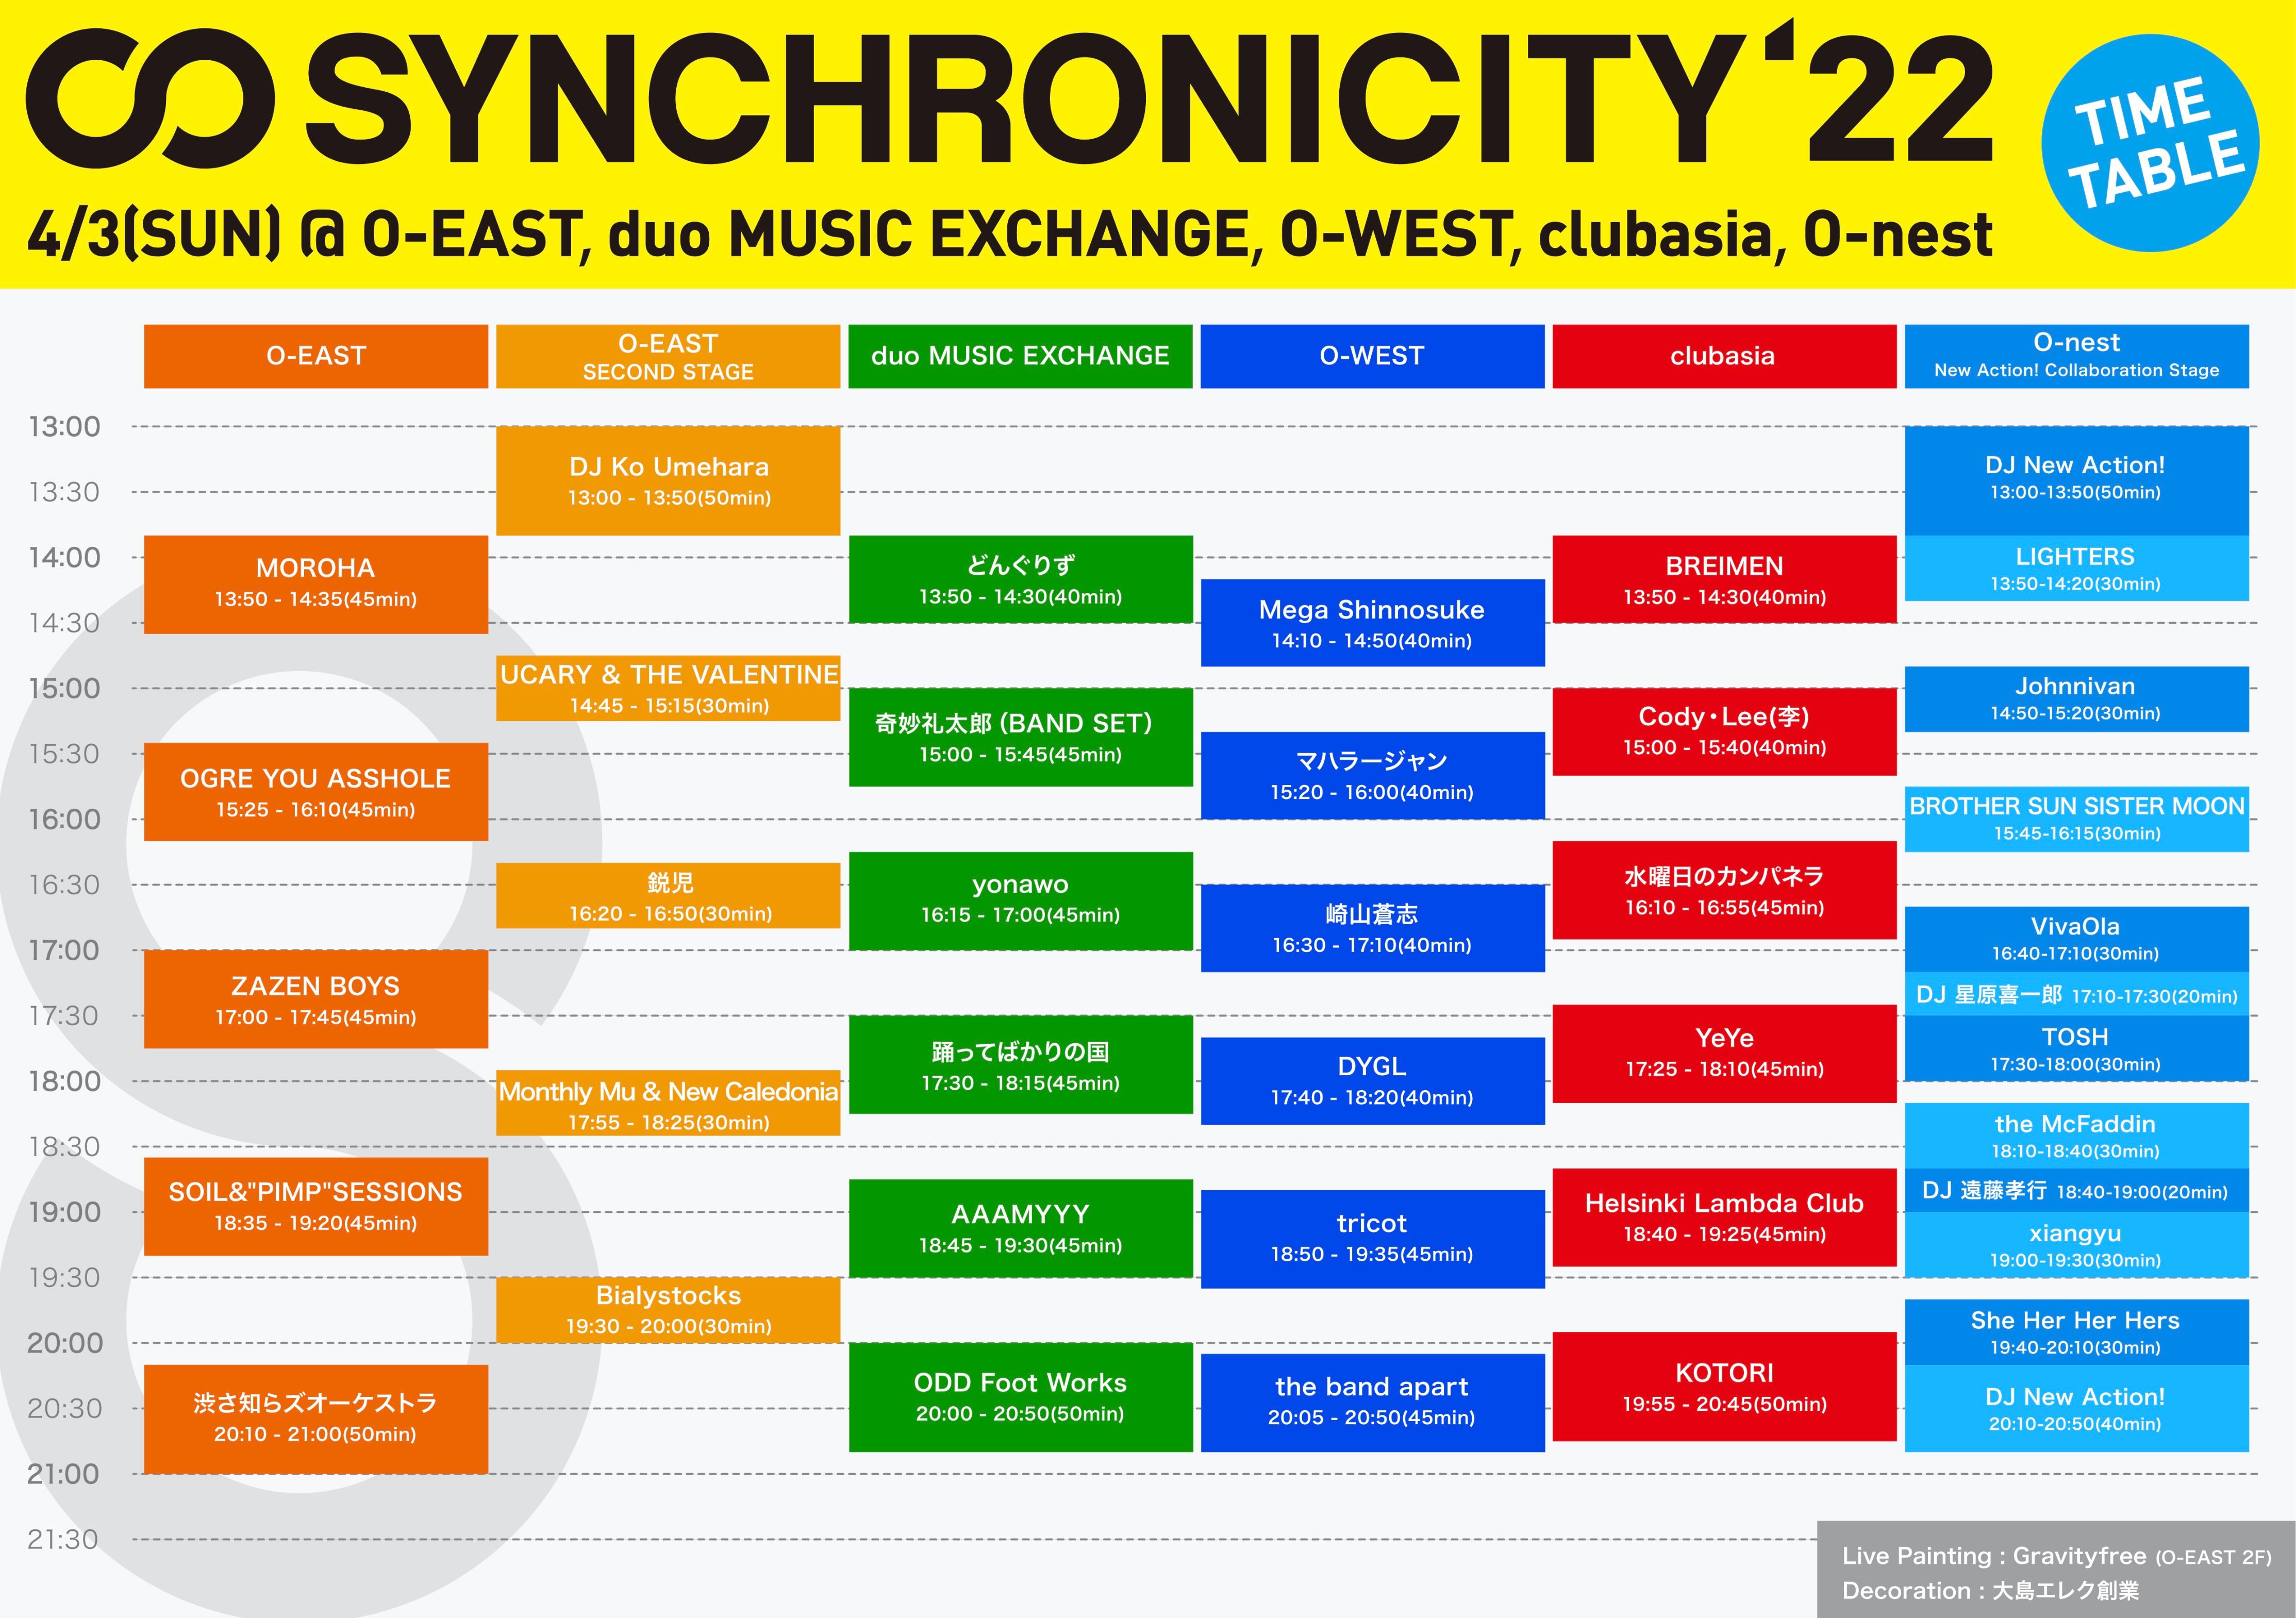 synchro22_timetable_220403_fix3